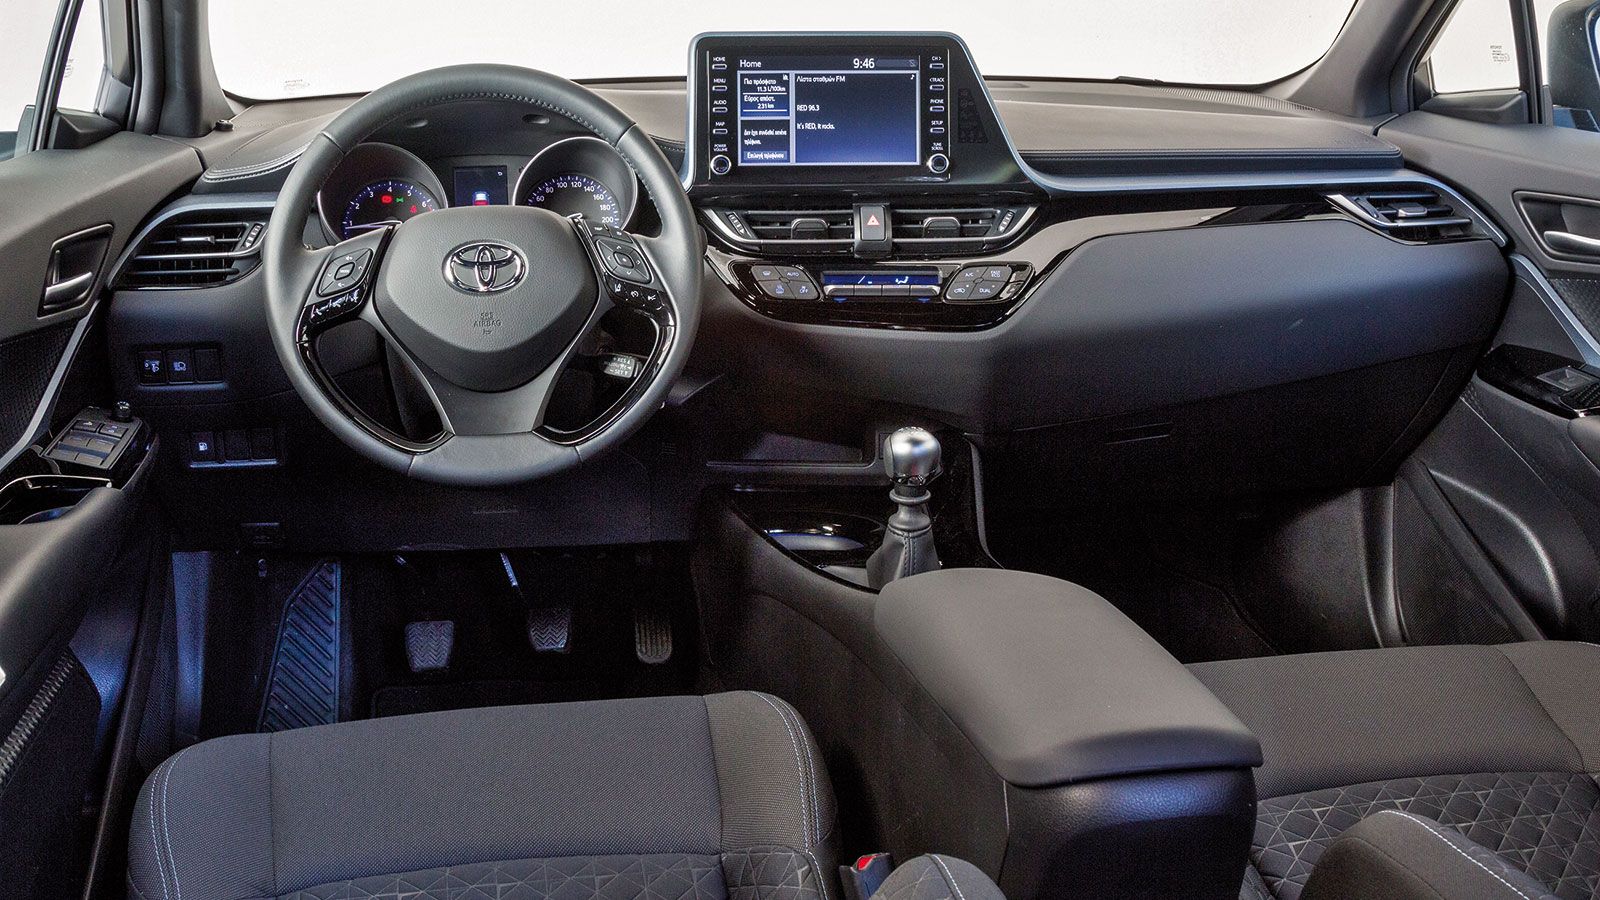 Περνώντας στην καμπίνα του Toyota C-HR, την προσοχή μας τραβά το ασύμμετρο και οδηγοκεντρικό ταμπλό